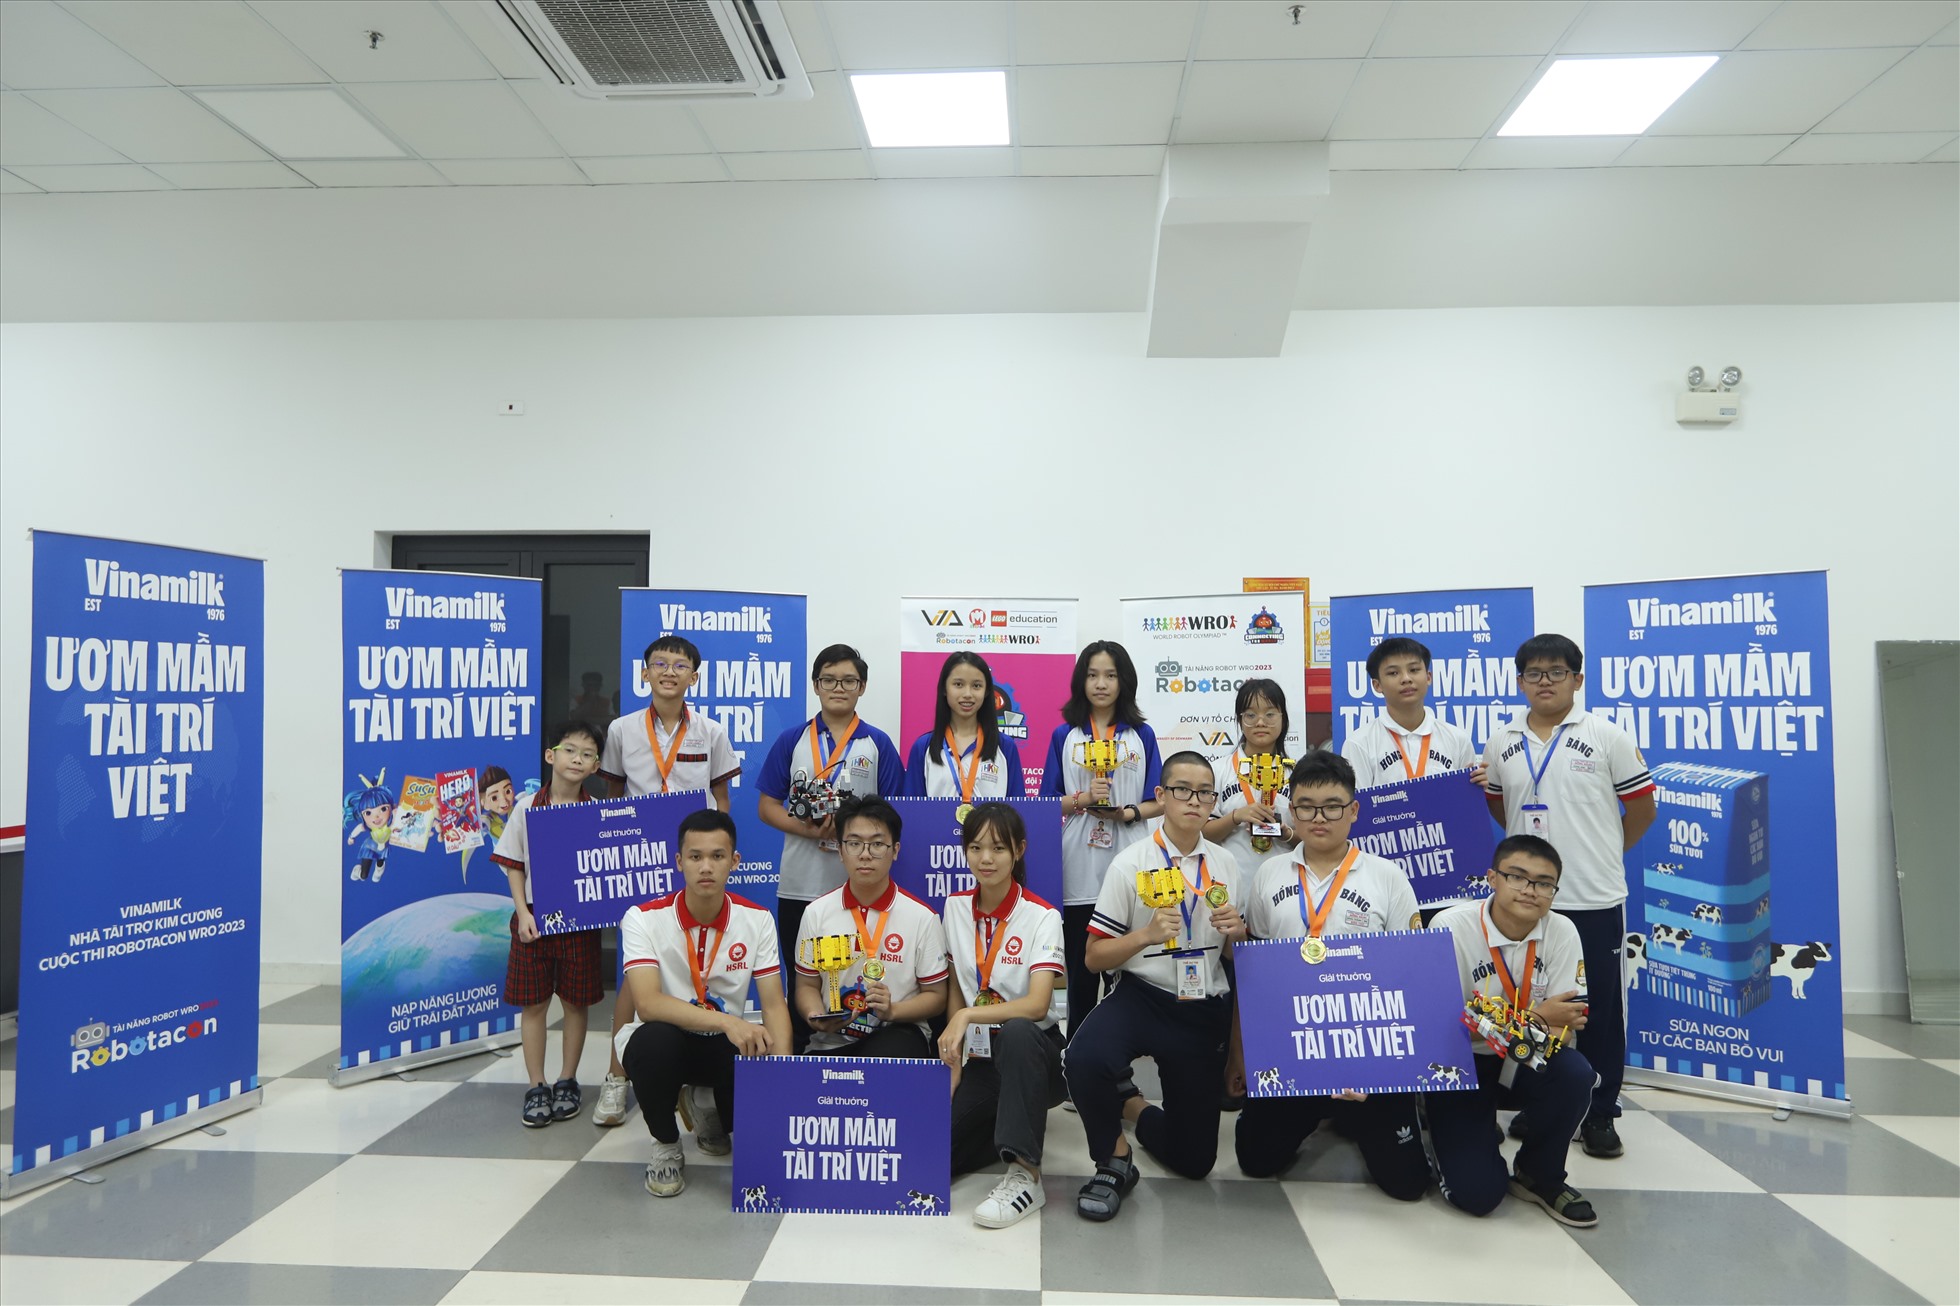 Các đội vô địch 5 bảng hào hứng nhận giải thưởng “Ươm mầm tài trí Việt” từ Vinamilk. Ảnh: Vinamilk